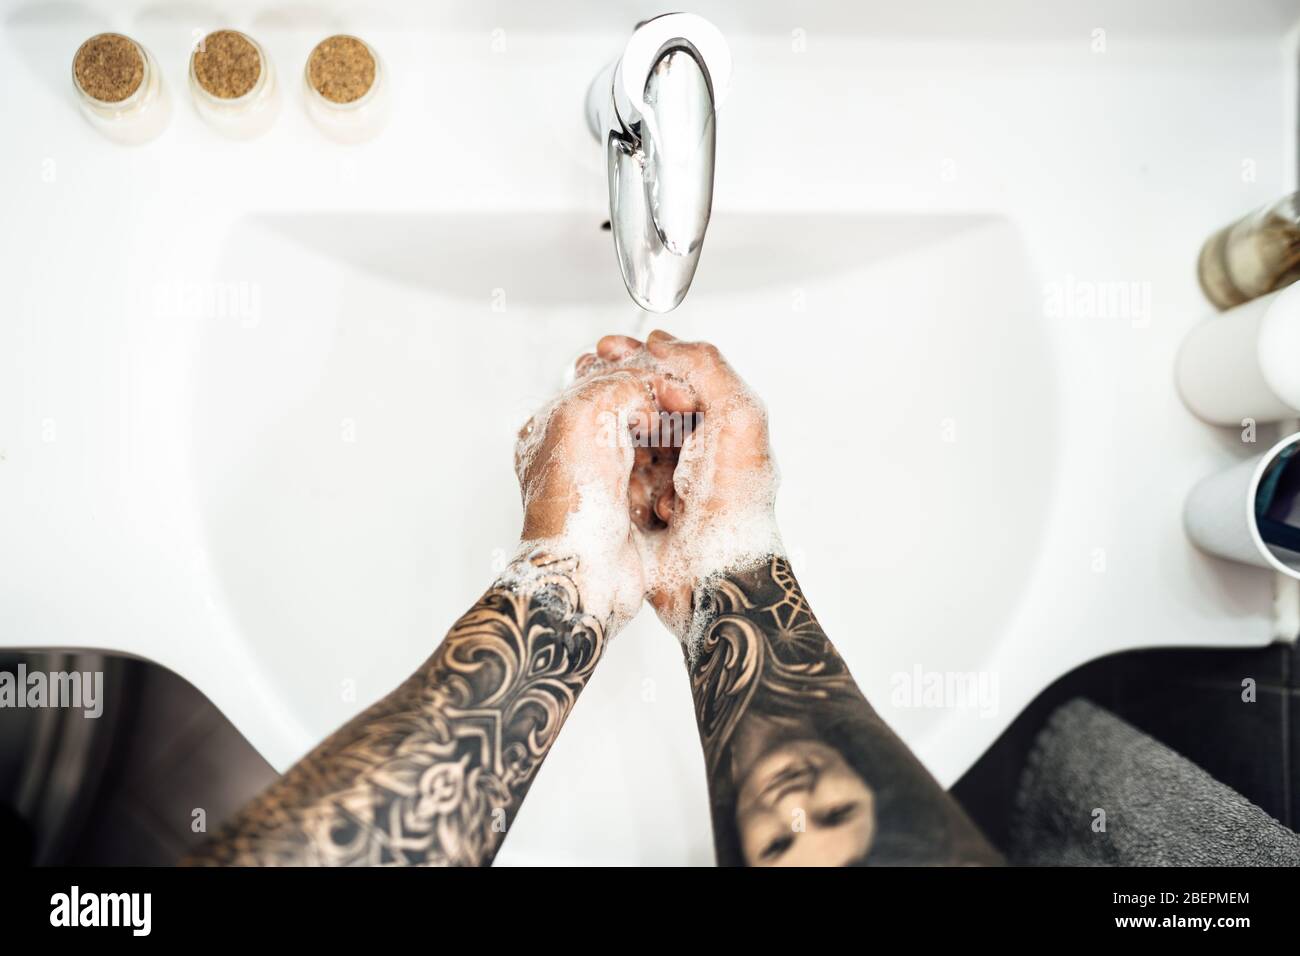 Procedura antisettica di lavaggio delle mani con sapone e acqua in bagno.decontaminazione fasi di igiene delle mani routine.pulizia mani, palme, interlacciato dito Foto Stock